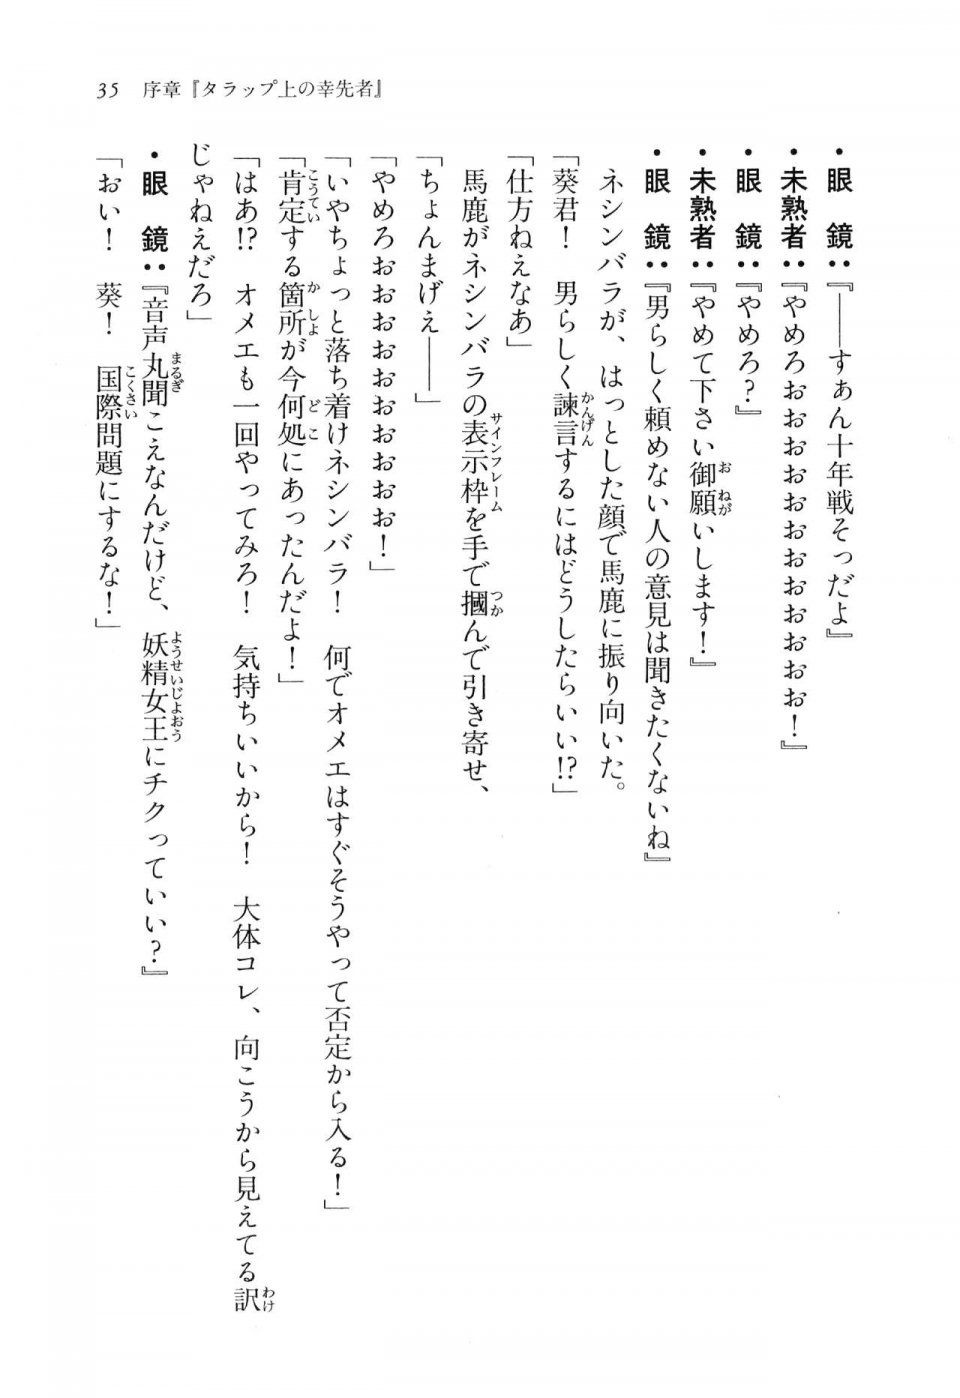 Kyoukai Senjou no Horizon LN Vol 16(7A) - Photo #35